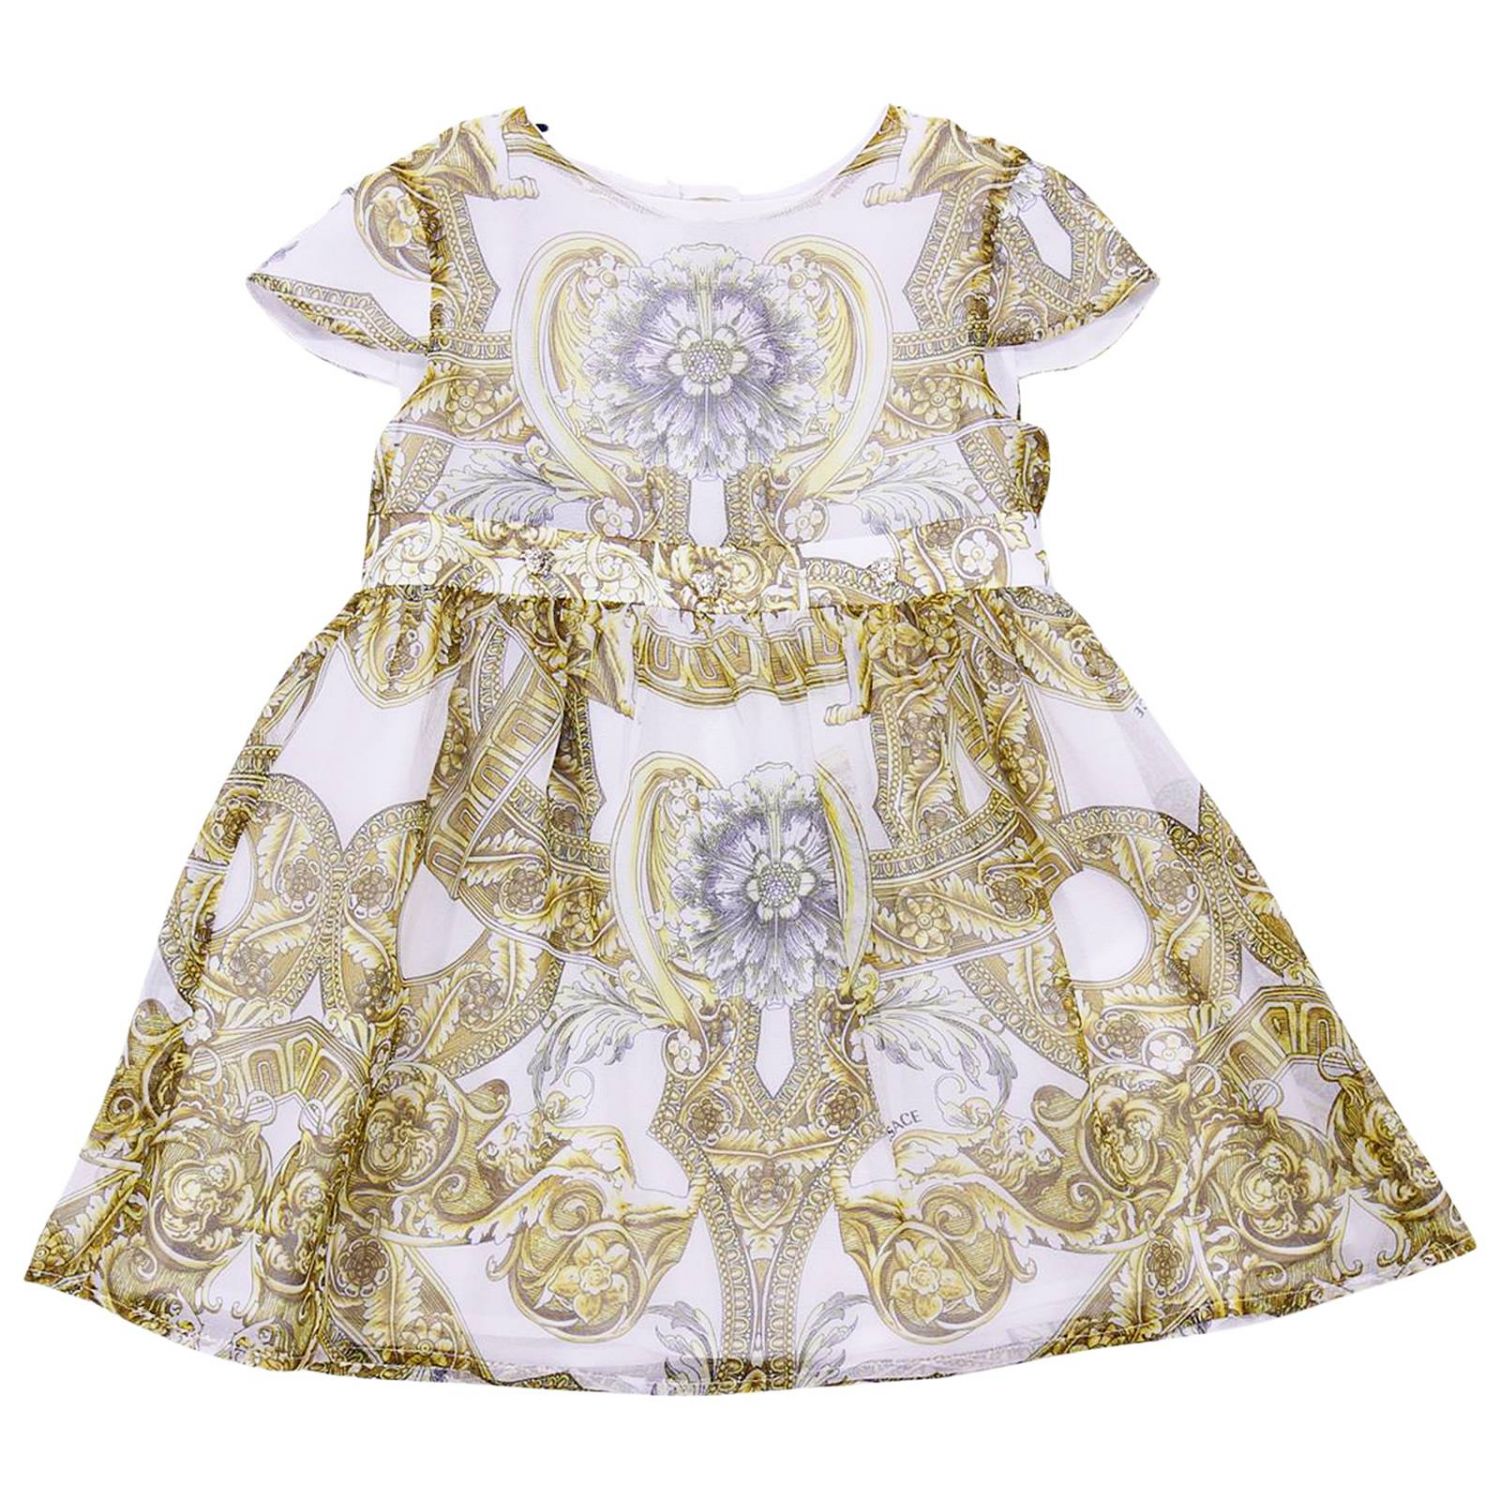 versace infant clothes